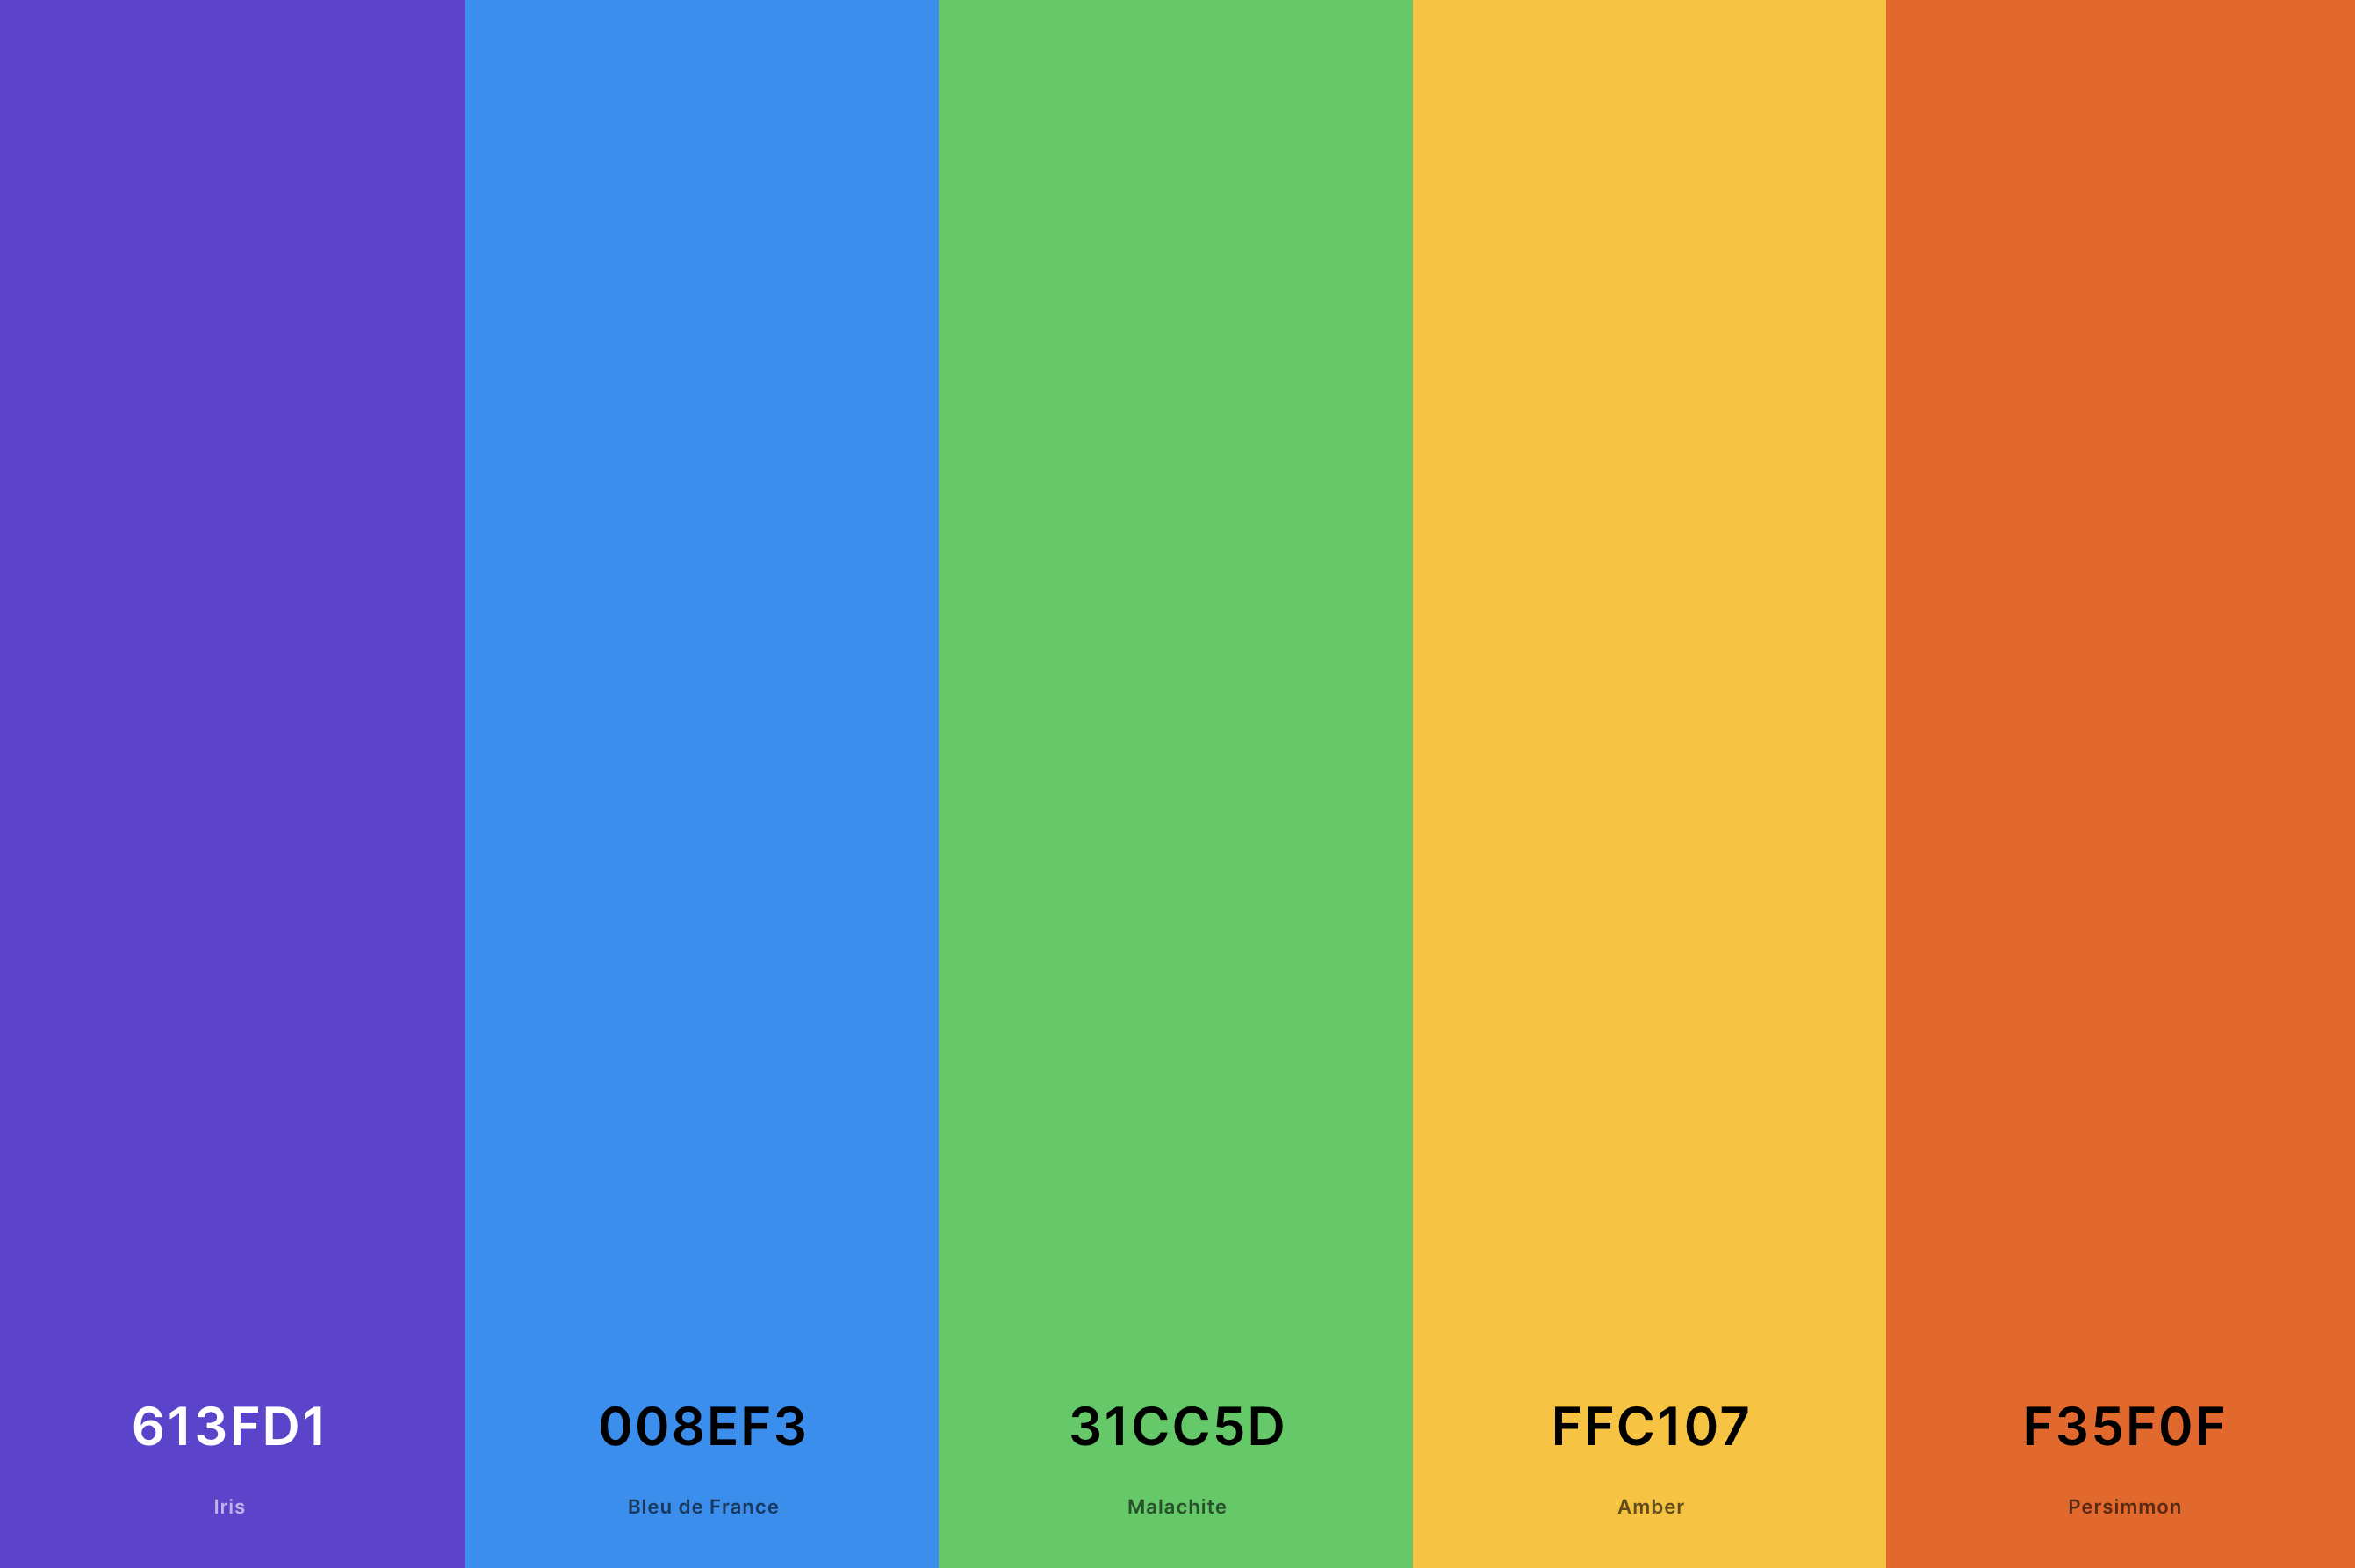 22. Retro Arcade Color Palette Color Palette with Iris (Hex #613FD1) + Bleu De France (Hex #008EF3) + Malachite (Hex #31CC5D) + Amber (Hex #FFC107) + Persimmon (Hex #F35F0F) Color Palette with Hex Codes